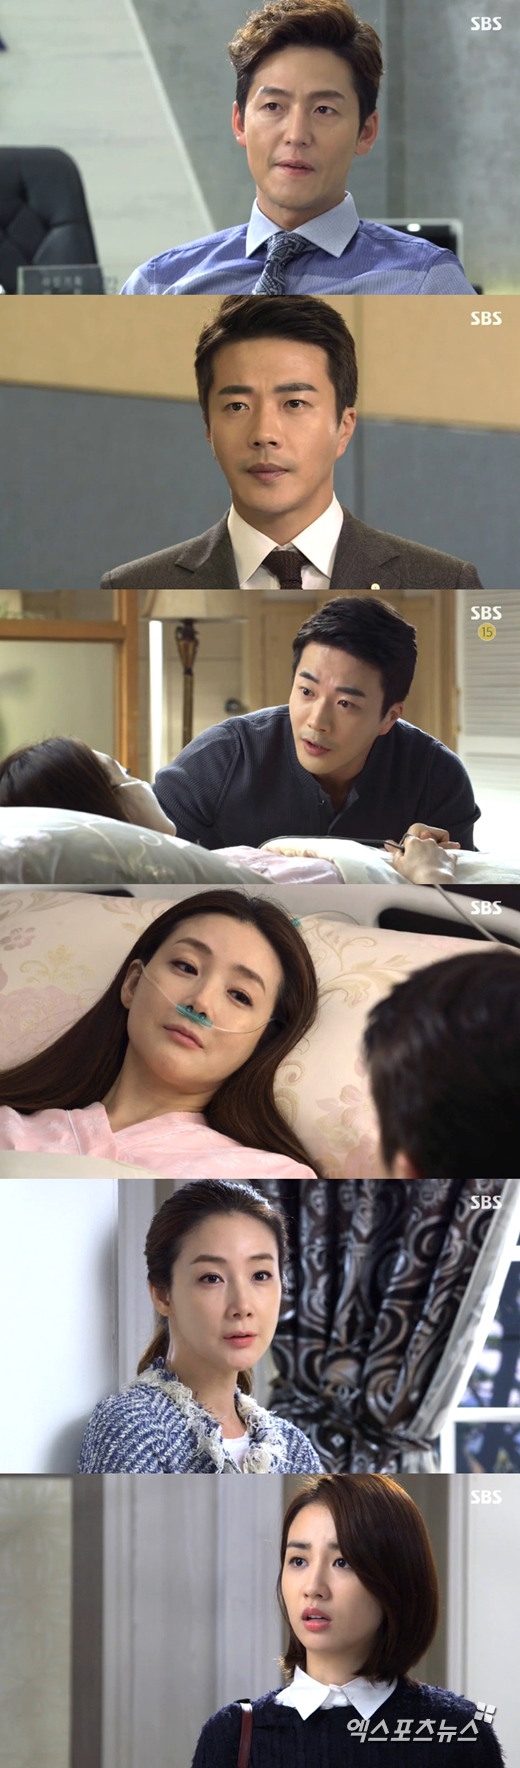 '유혹'의 네 남녀가 복수와 질투로 얽힌 악연을 그렸다. ⓒ SBS 방송화면